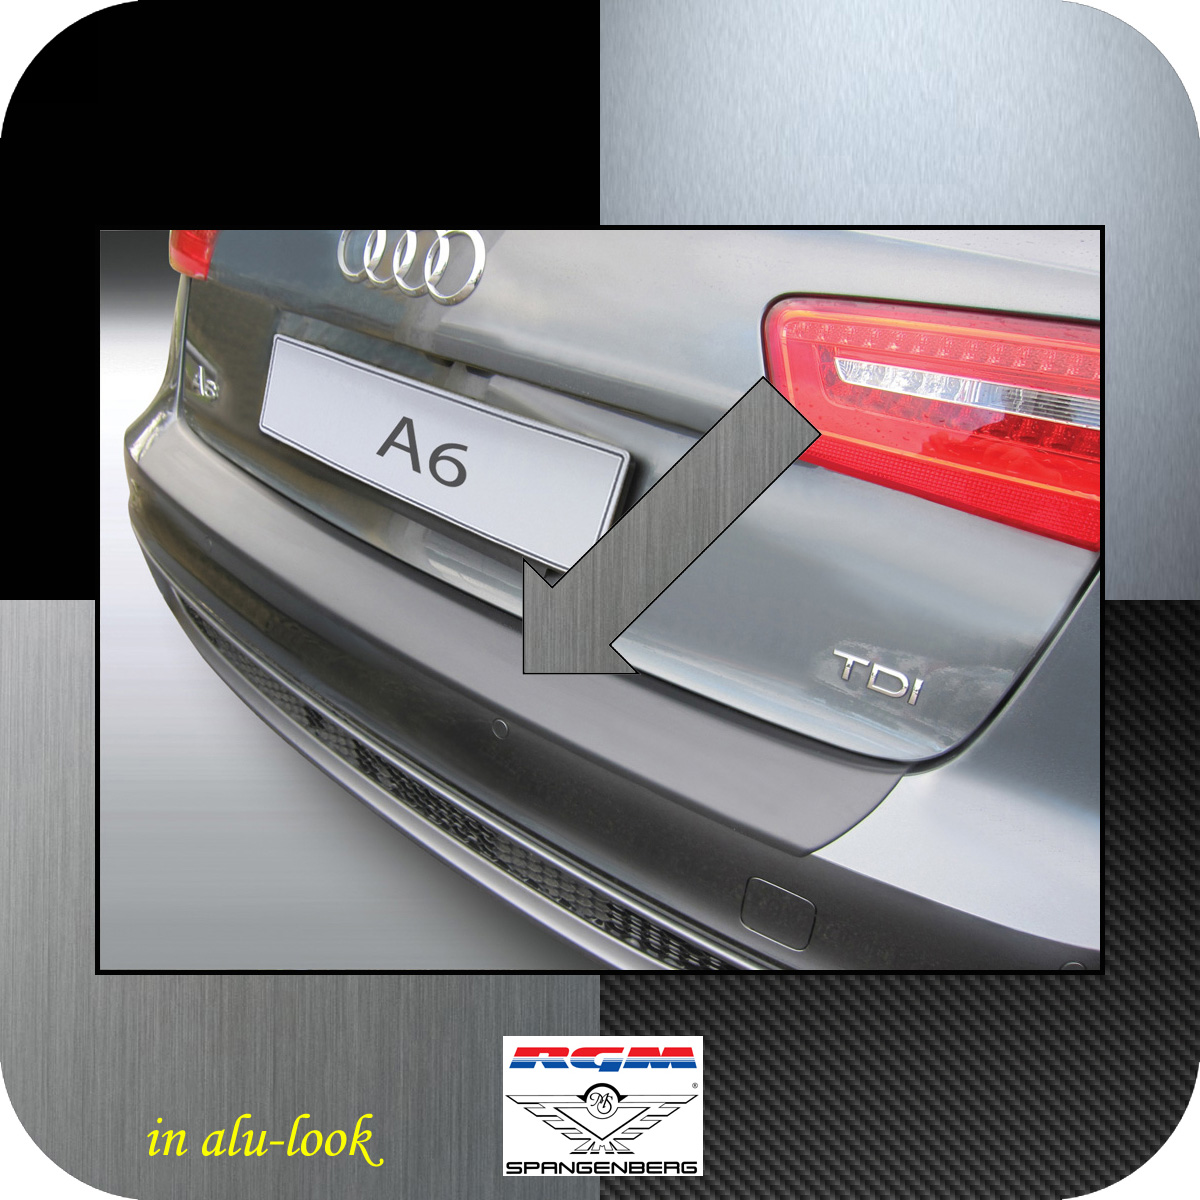 Ladekantenschutz Alu-Look Audi A6 C7 Avant Kombi vor Mopf 2011-2014 3504713